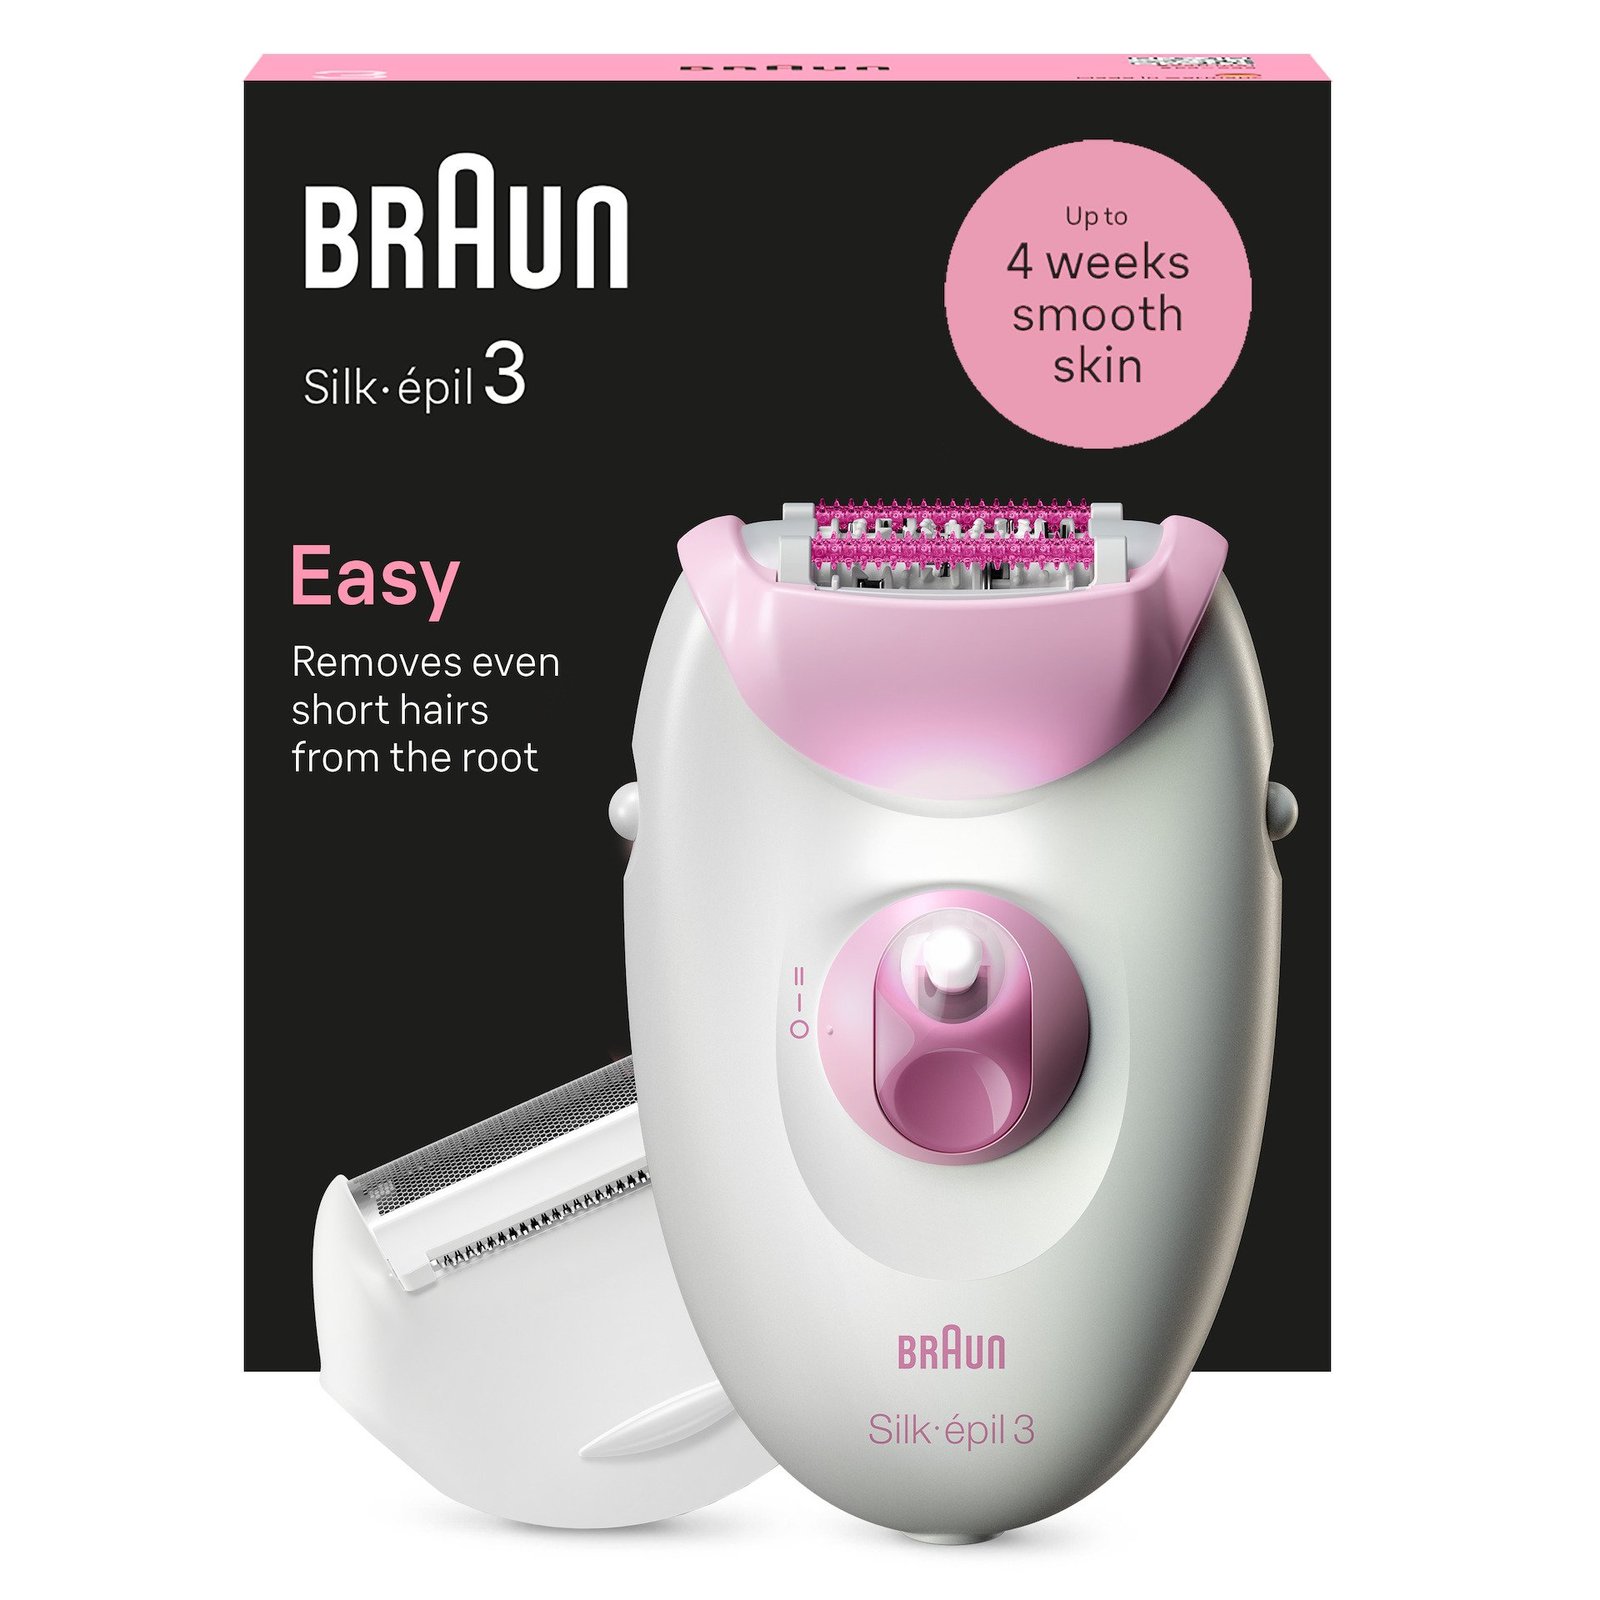 Braun Silk-épil 3, Epilator med sladd, för hårborttagning, med ladyshaver och trimmerkam 3-031, Rosa